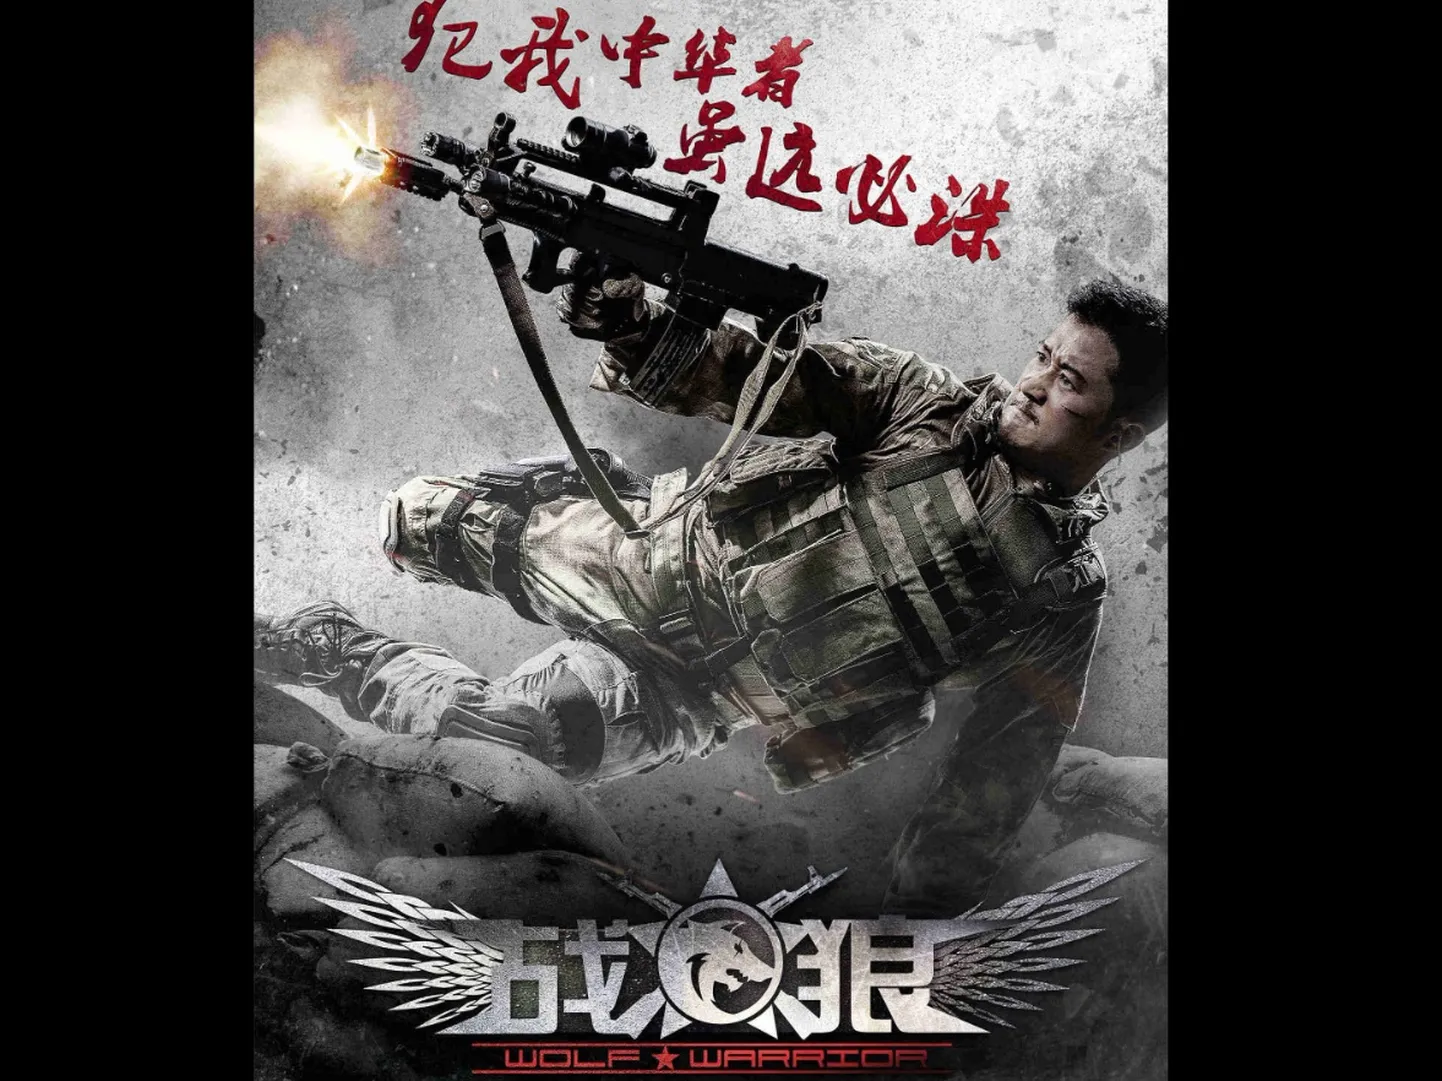 Постер художественного фильма "Боевой волк" о непобедимости китийских спецназовцев, защищающих интересы КНР в секретных операциях на международной арене.